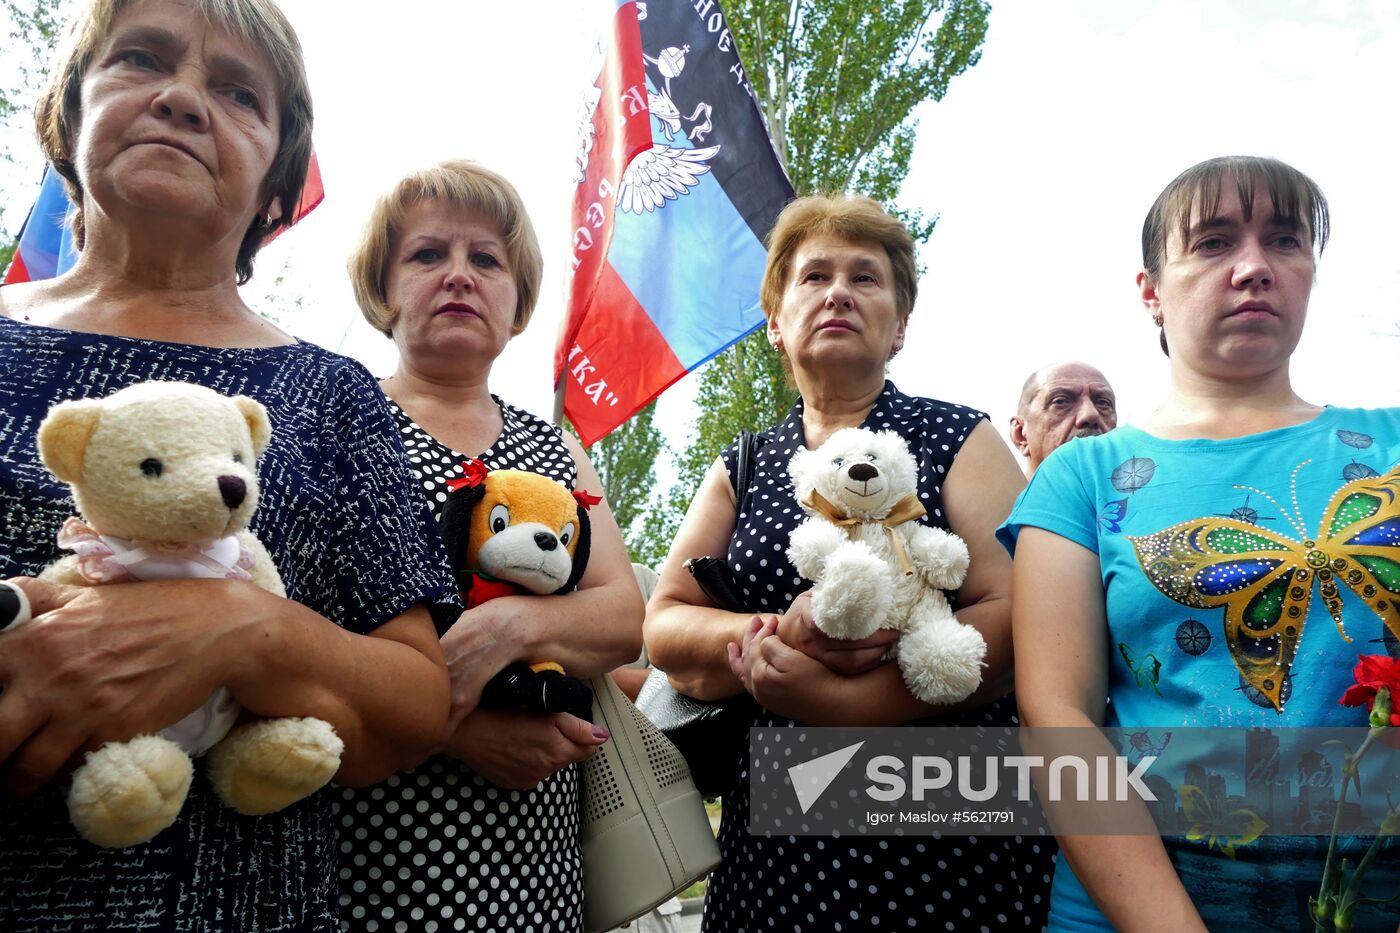 Commemorative event for children in Donetsk